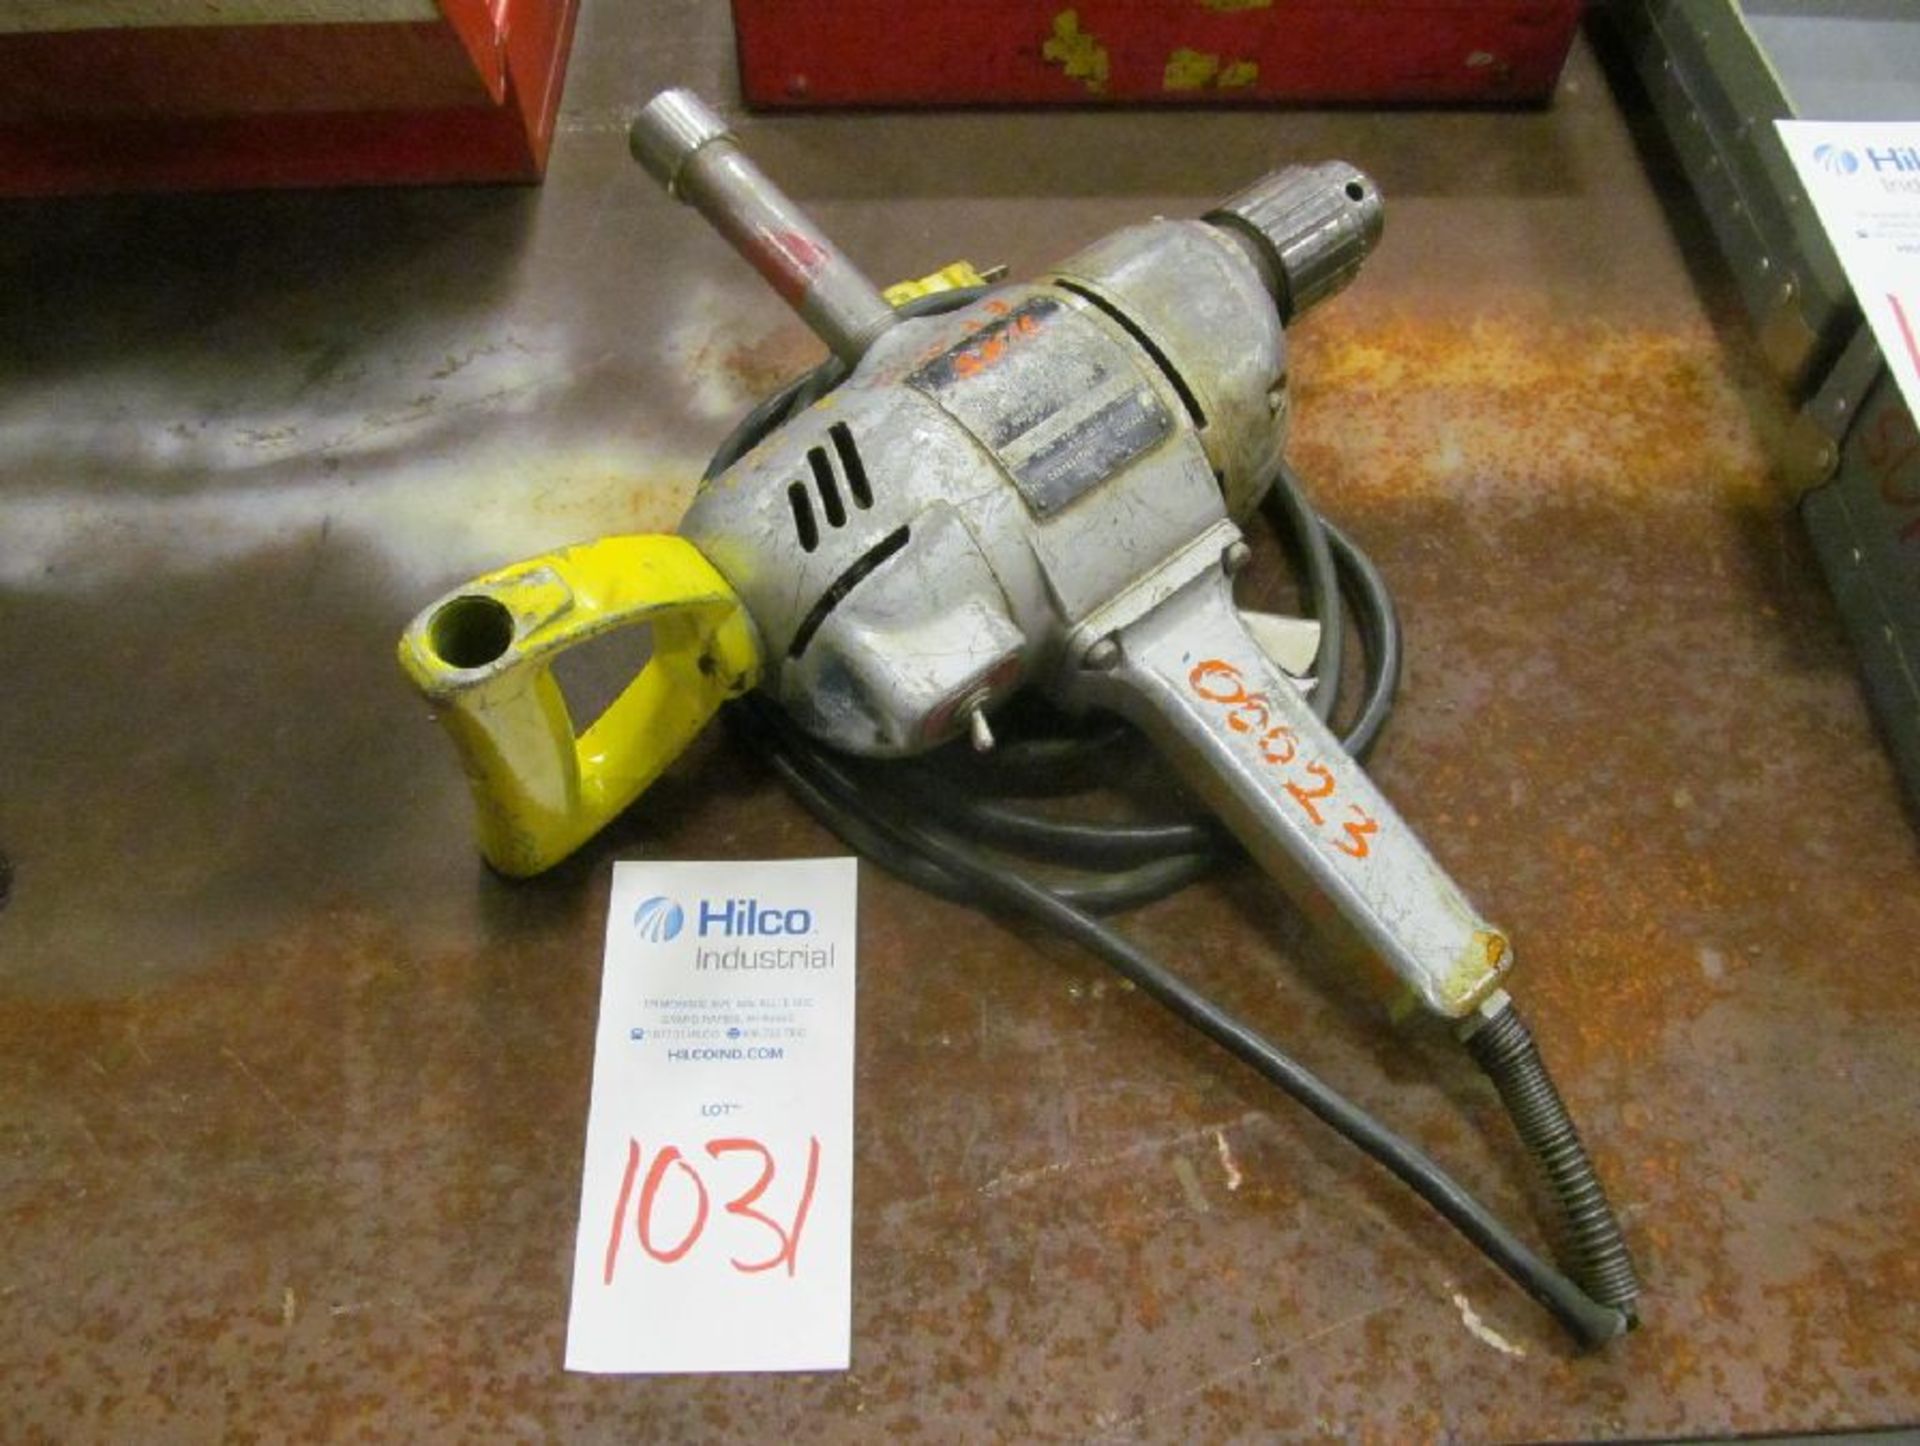 Skil Model 351 1/2" Drill